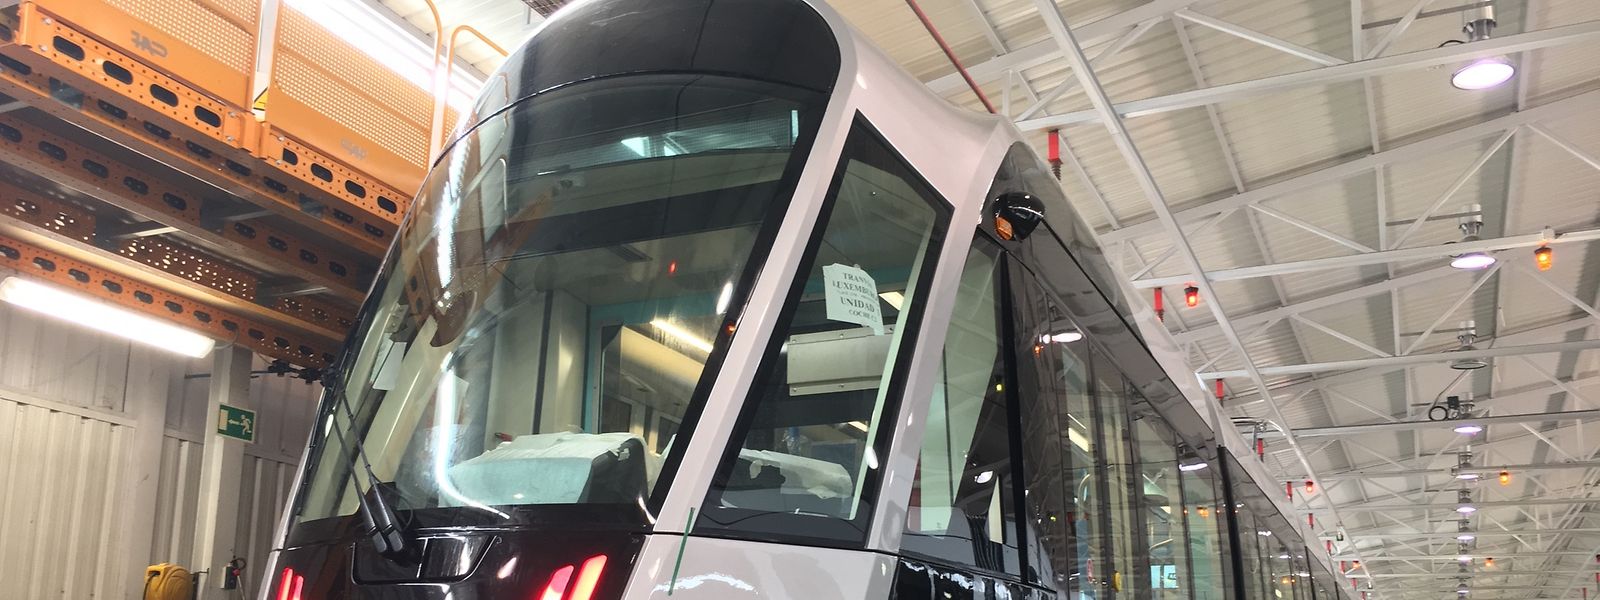 La première rame du Tram luxembourgeois est parachevée dans les ateliers de Saragosse. Elle sera livrée le mois prochain à Luxembourg.